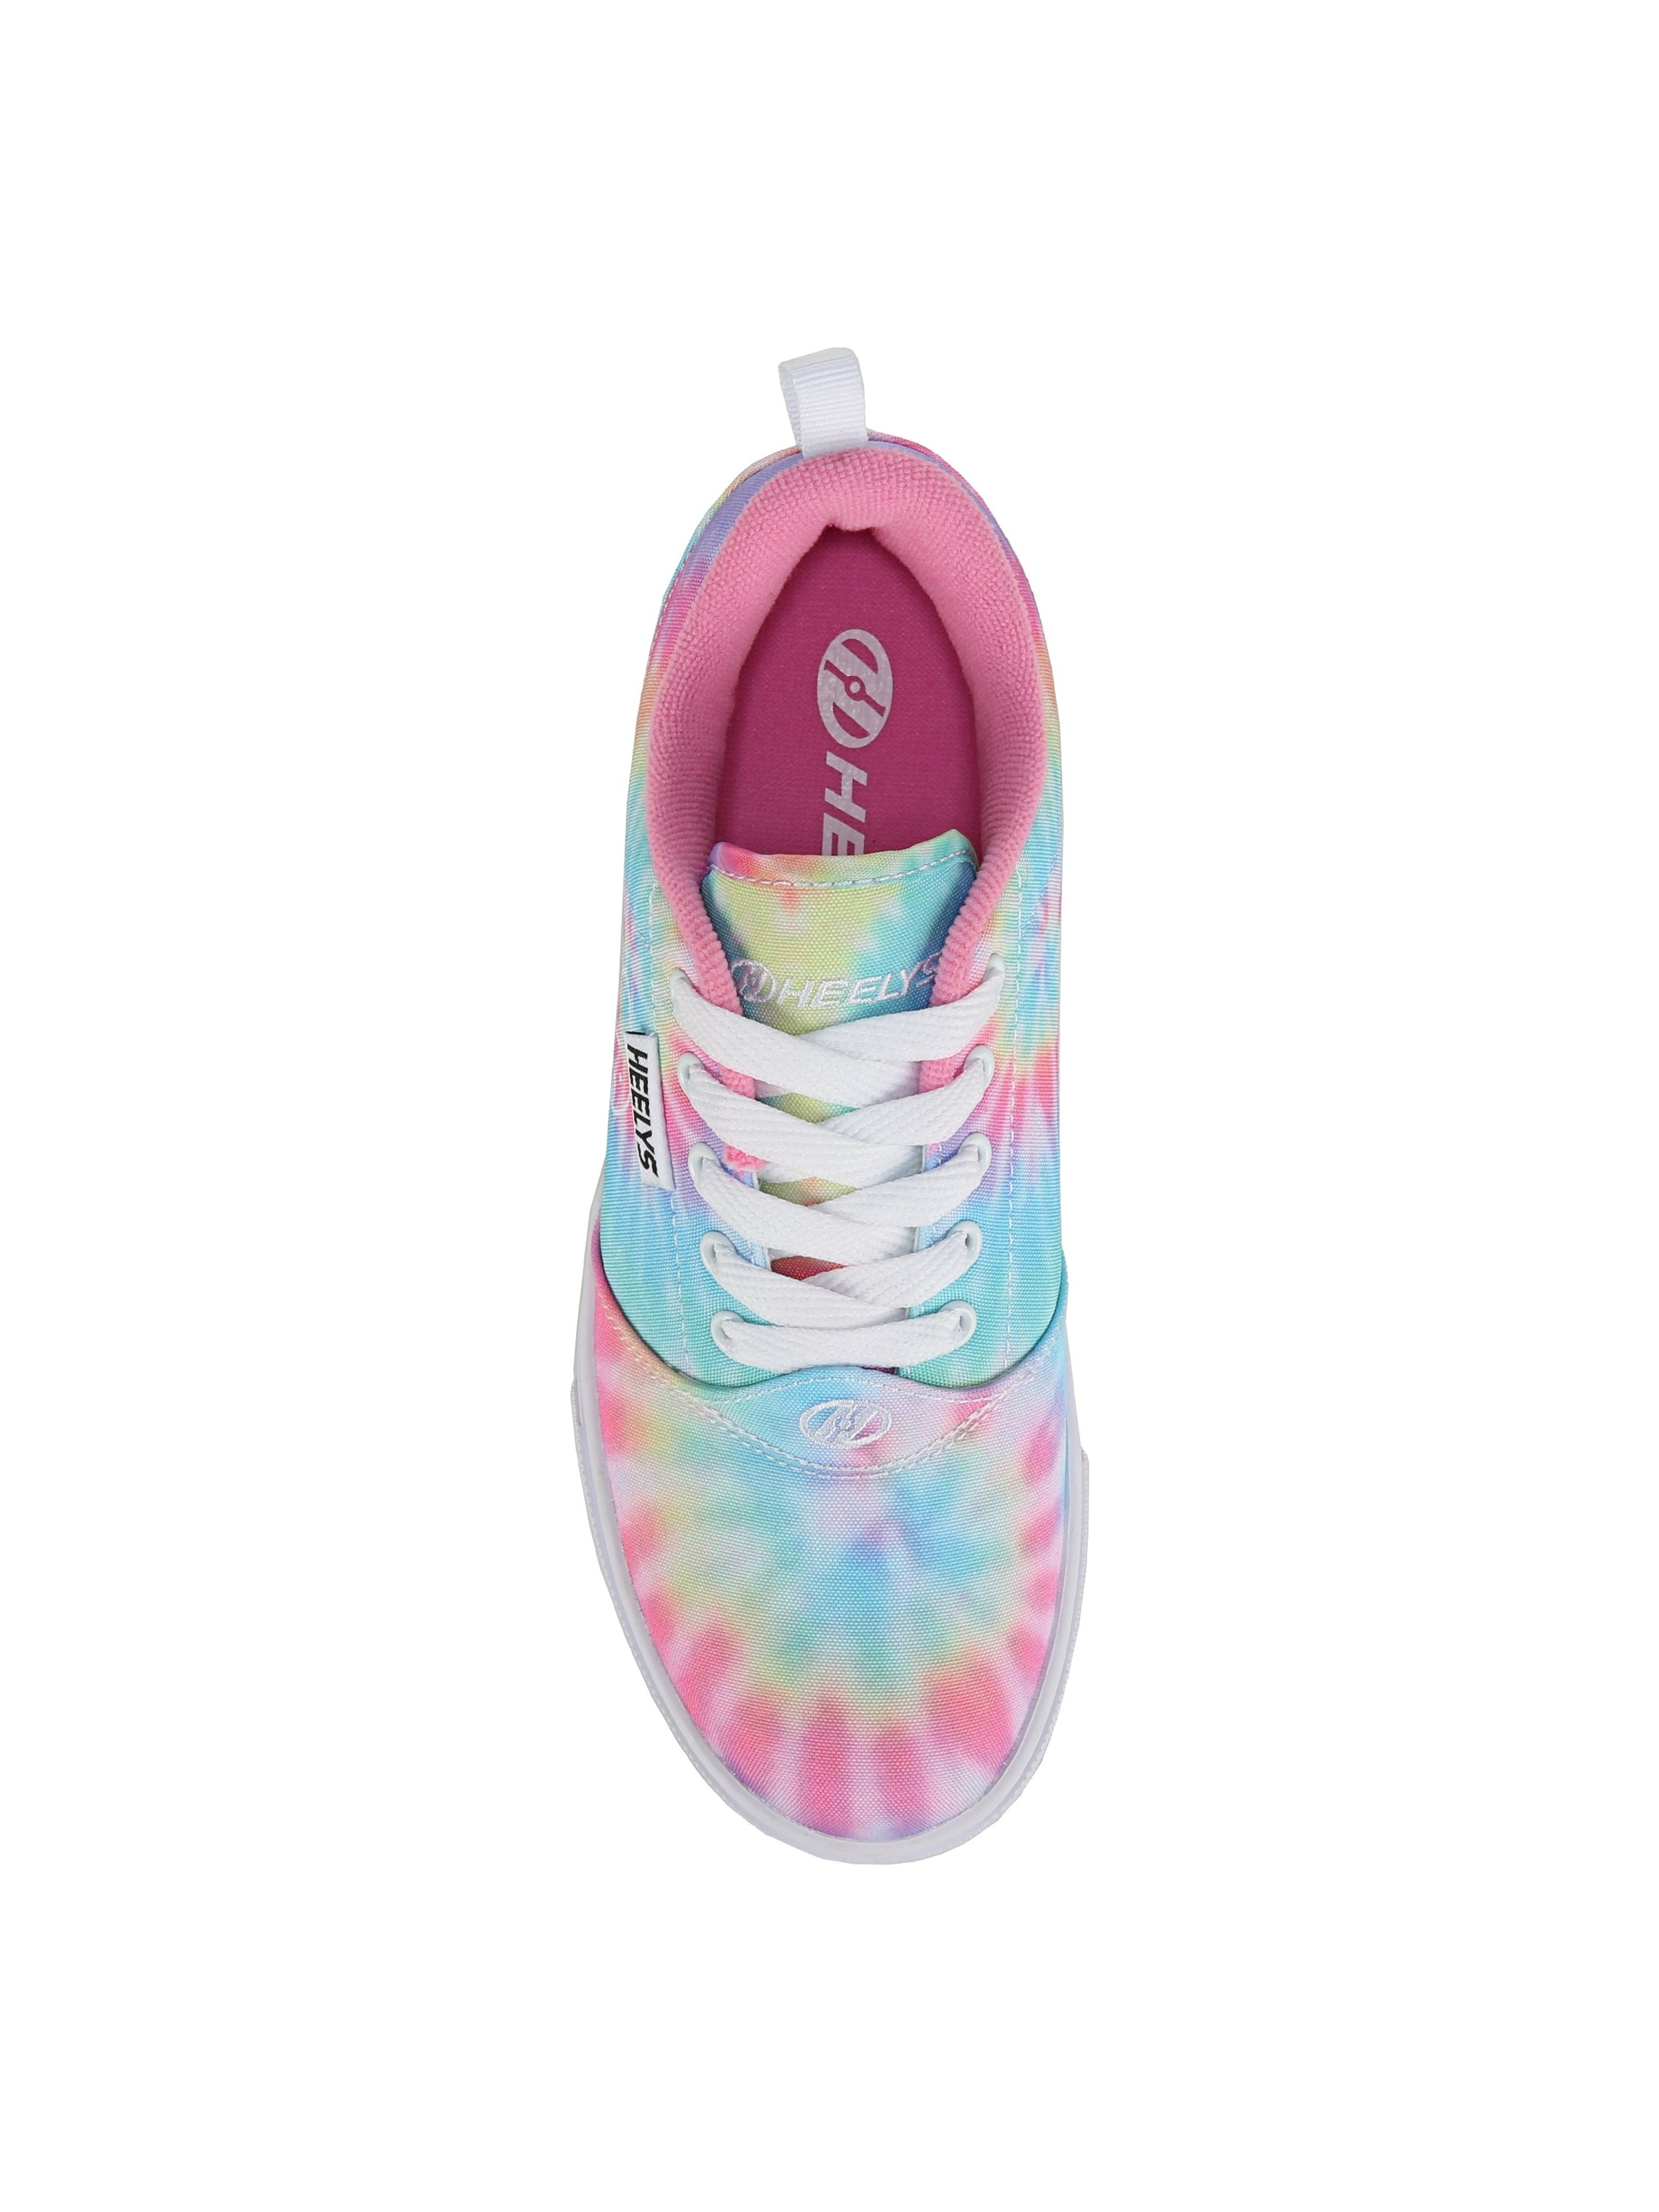 Heelys Heelys Pro 20 Prints Multi Color Athletic Skate Sneakers Youth 5 